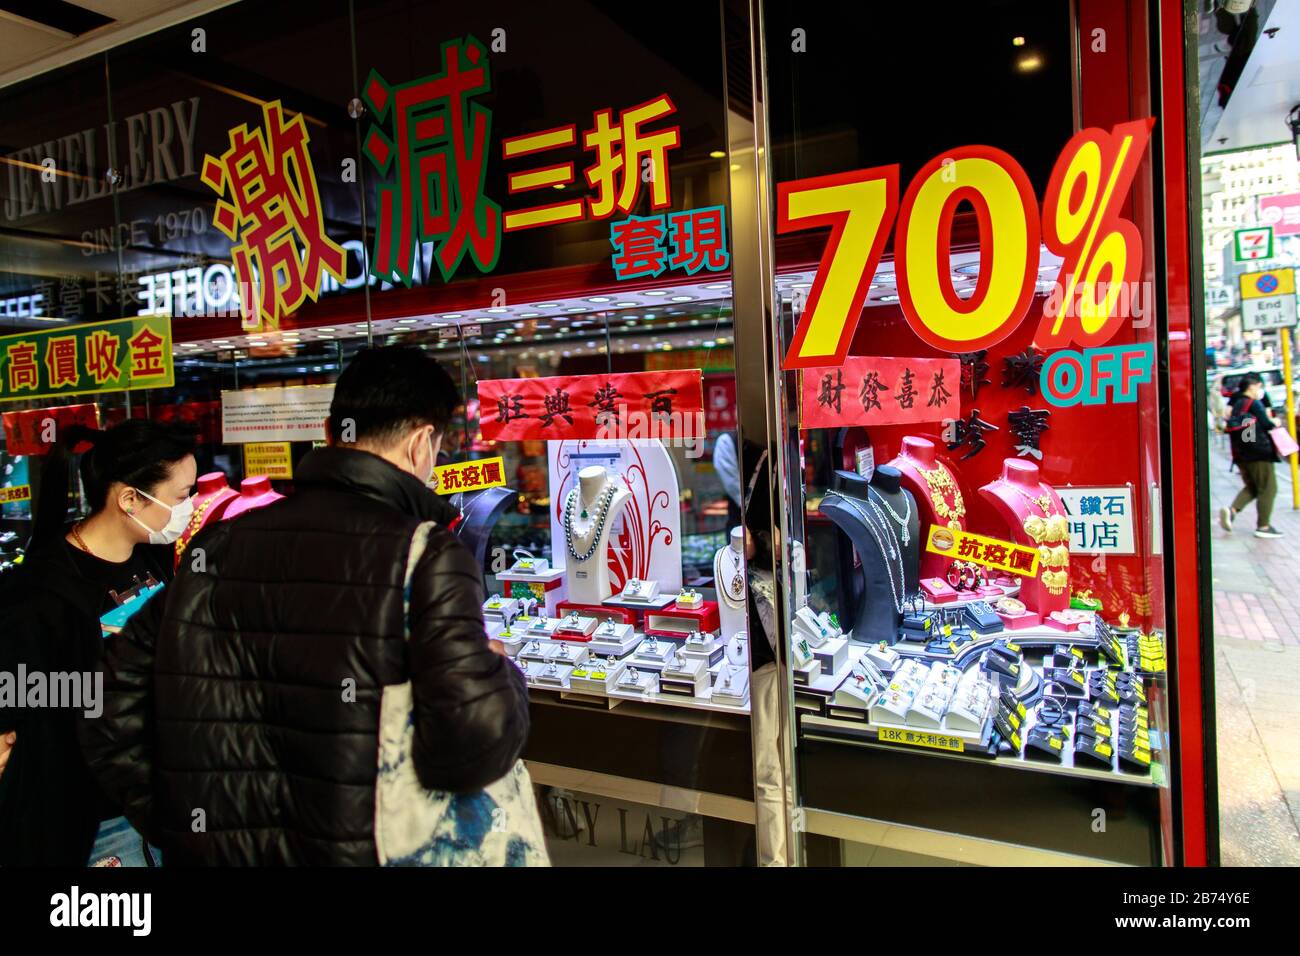 Les gens regarde les bijouteries dans une boutique qui affichent une réduction de 70% sur les diamants à Tsim Sha Tsui à Hong Kong. Banque D'Images